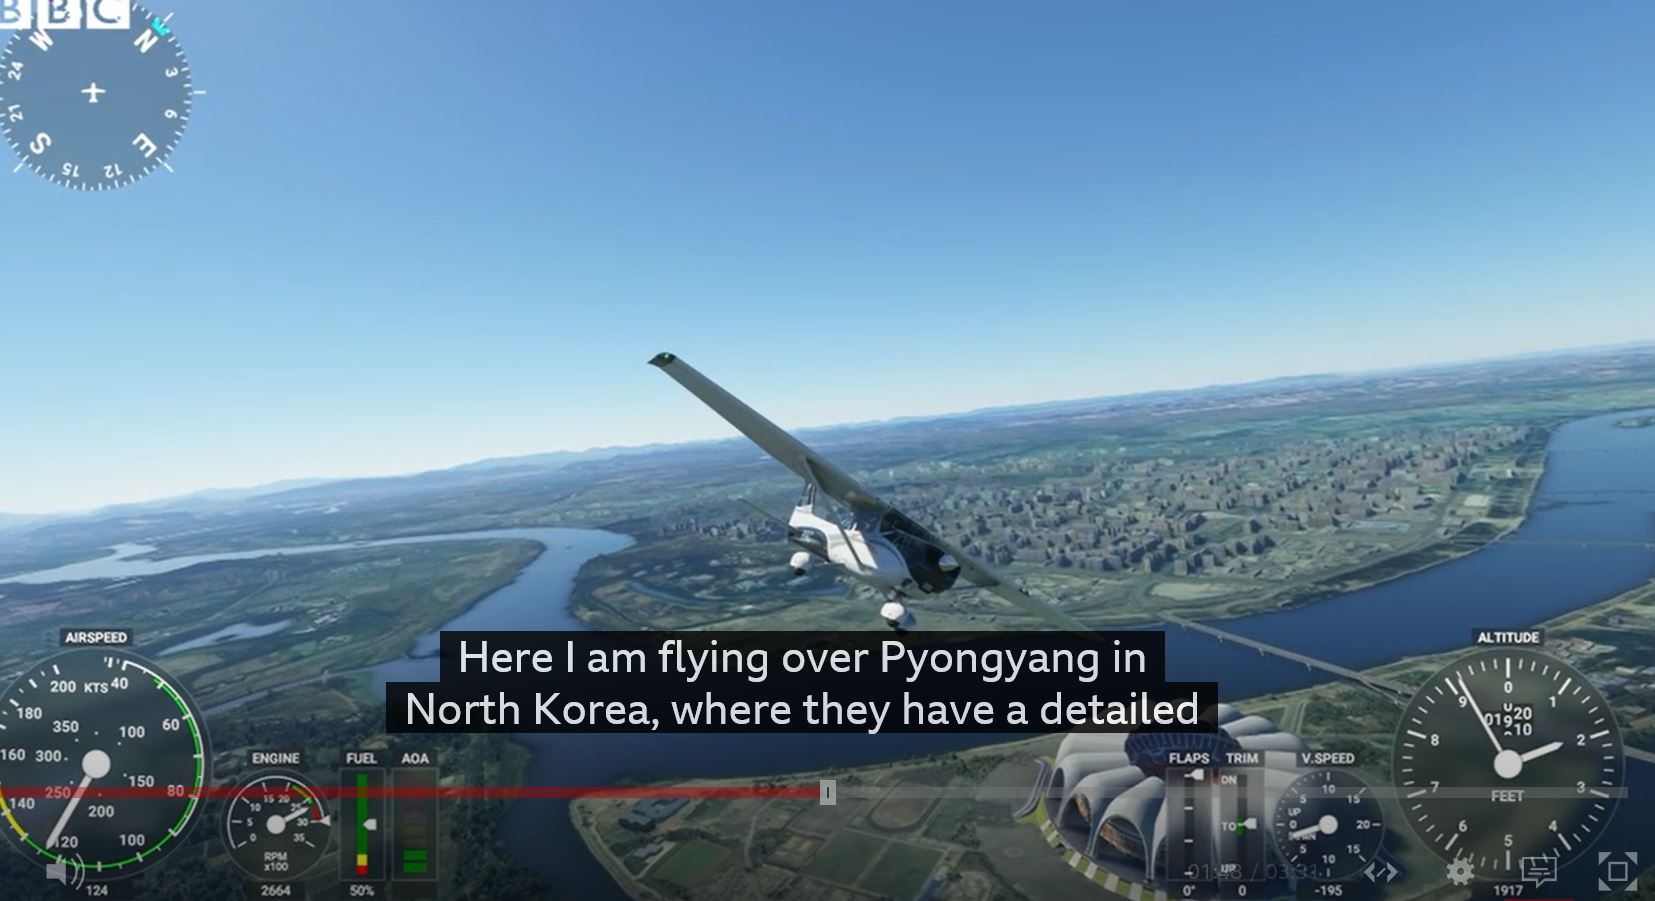 미국 마이크로소프트(MS)의 2020 비행 시뮬레이터 게임을 미리 해본 영국 BBC의 IT 전문기자 데이비드 몰로이가 북한 평양 상공을 비행하는 듯한 경험을 했던 소감을 털어놓았다. BBC 동영상 캡처